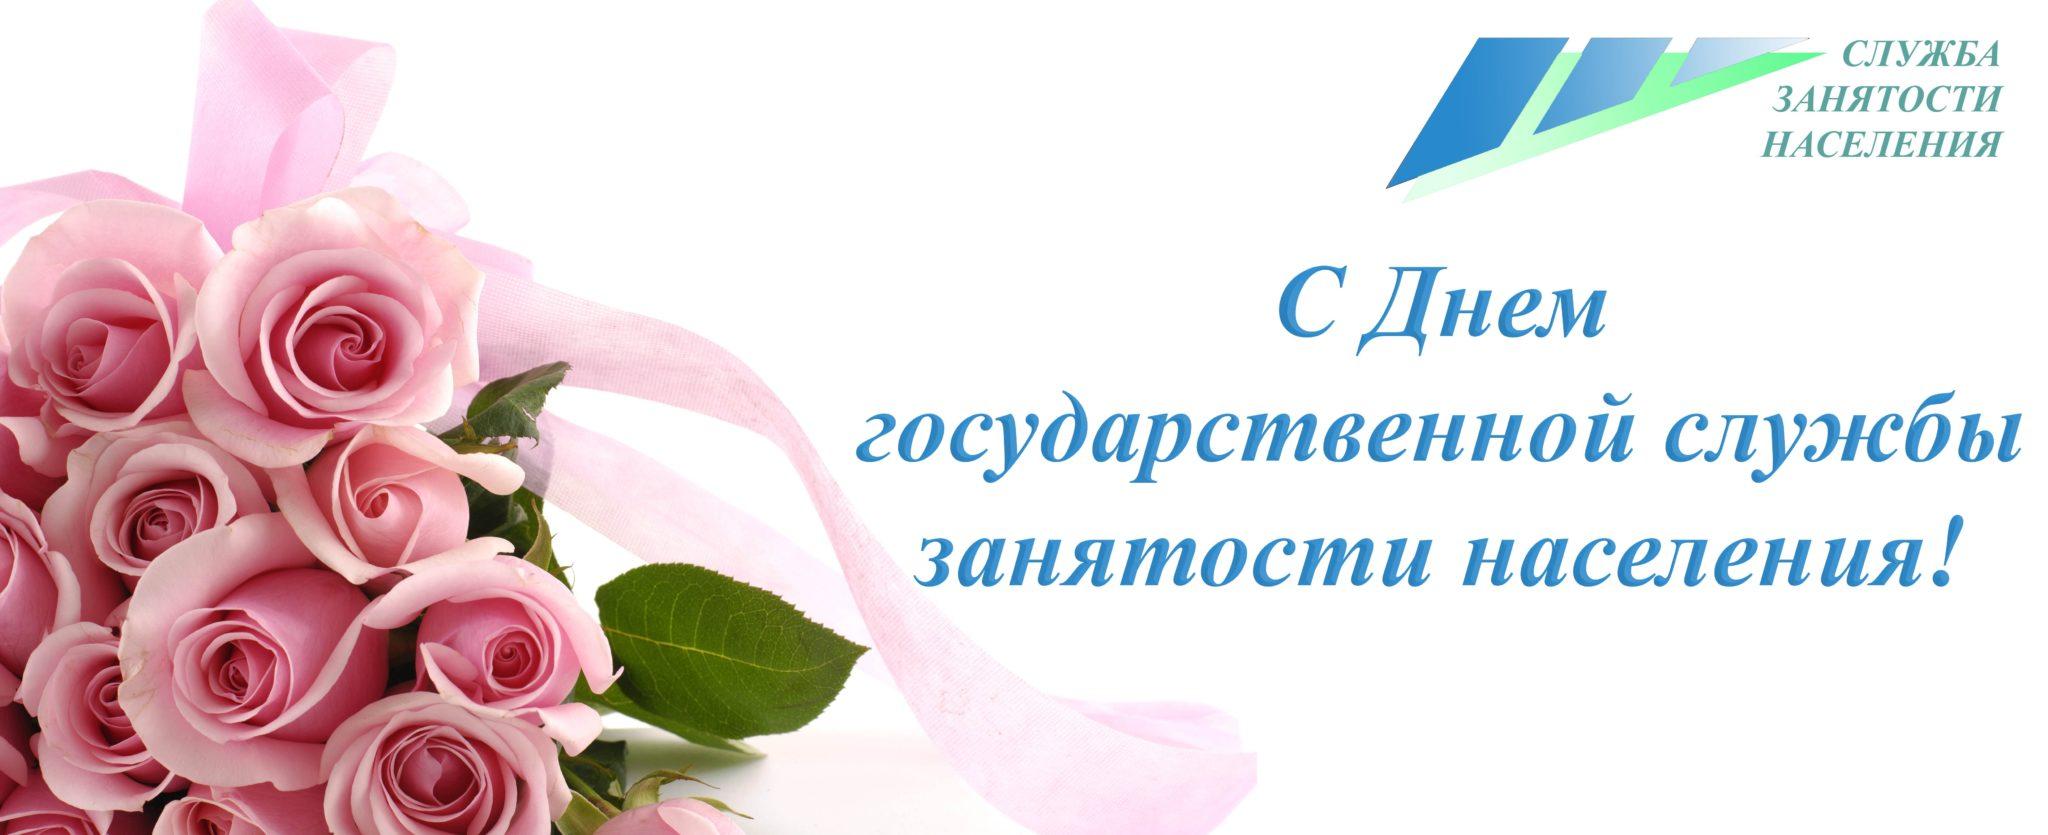 19 апреля-День государственной службы занятости населения РФ.